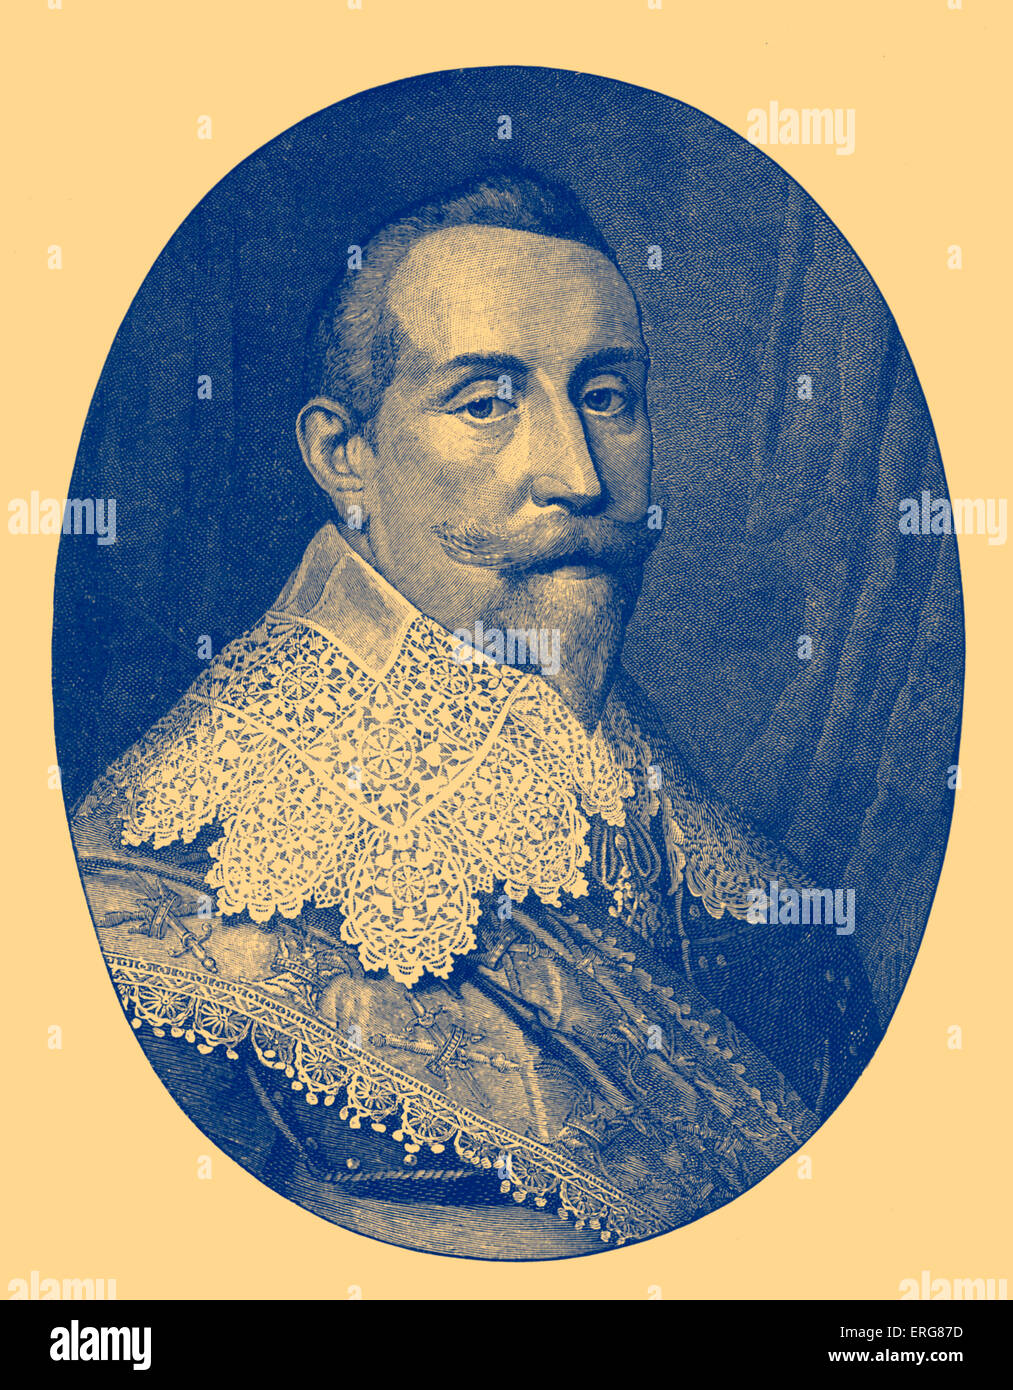 Gustavo Adolfo di Svezia/ re Gustav II Adolf (1594 - 1632). Il re ha portato l'esercito svedese durante la Guerra dei Trent'anni. Foto Stock